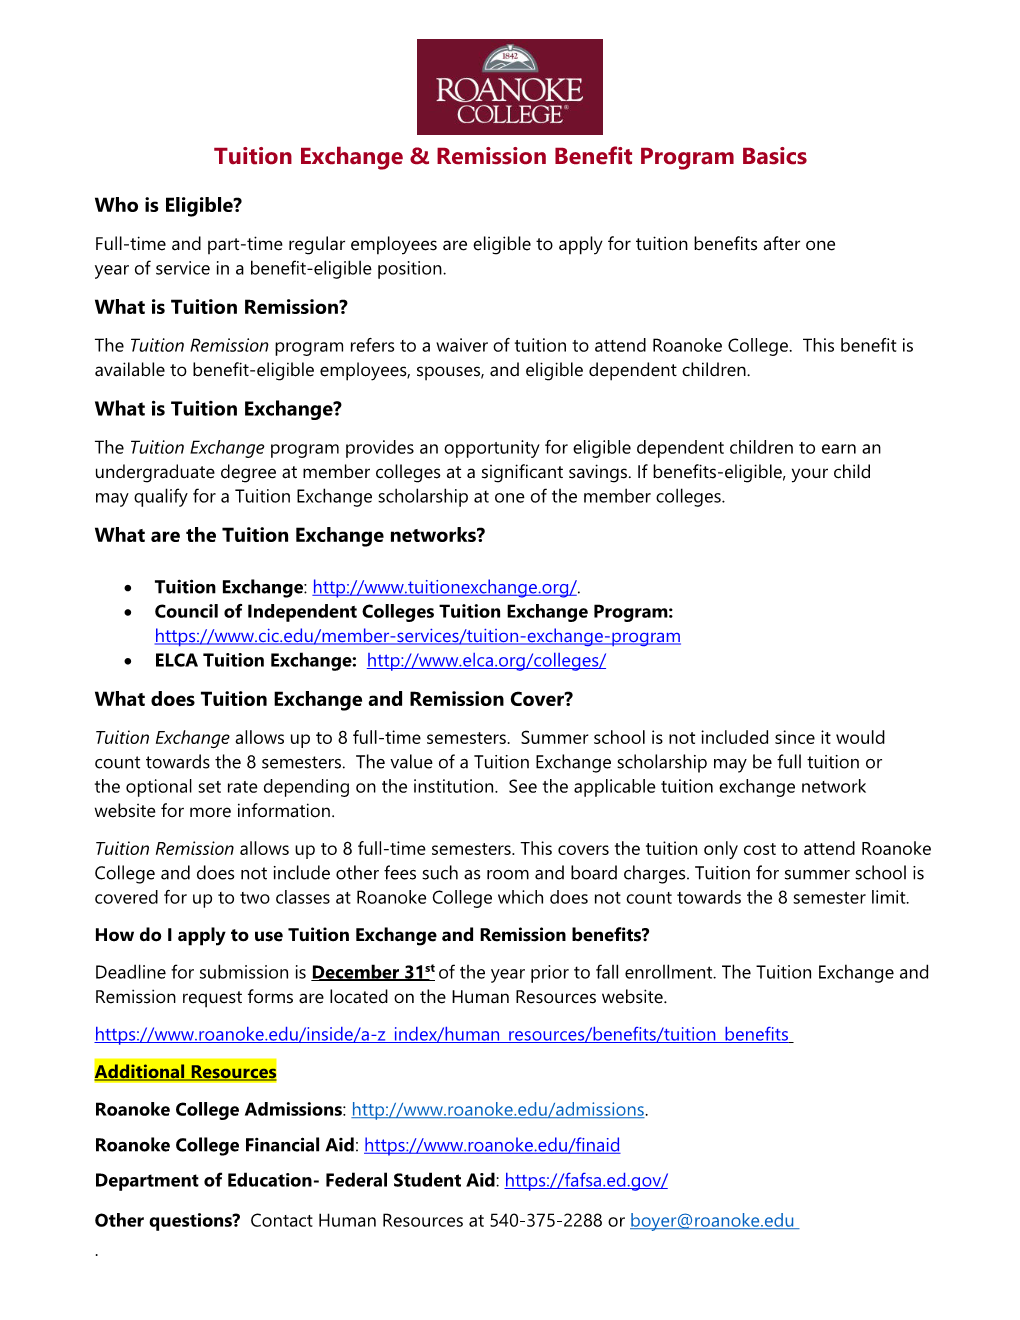 Tuition Exchange/Remission Program Basics